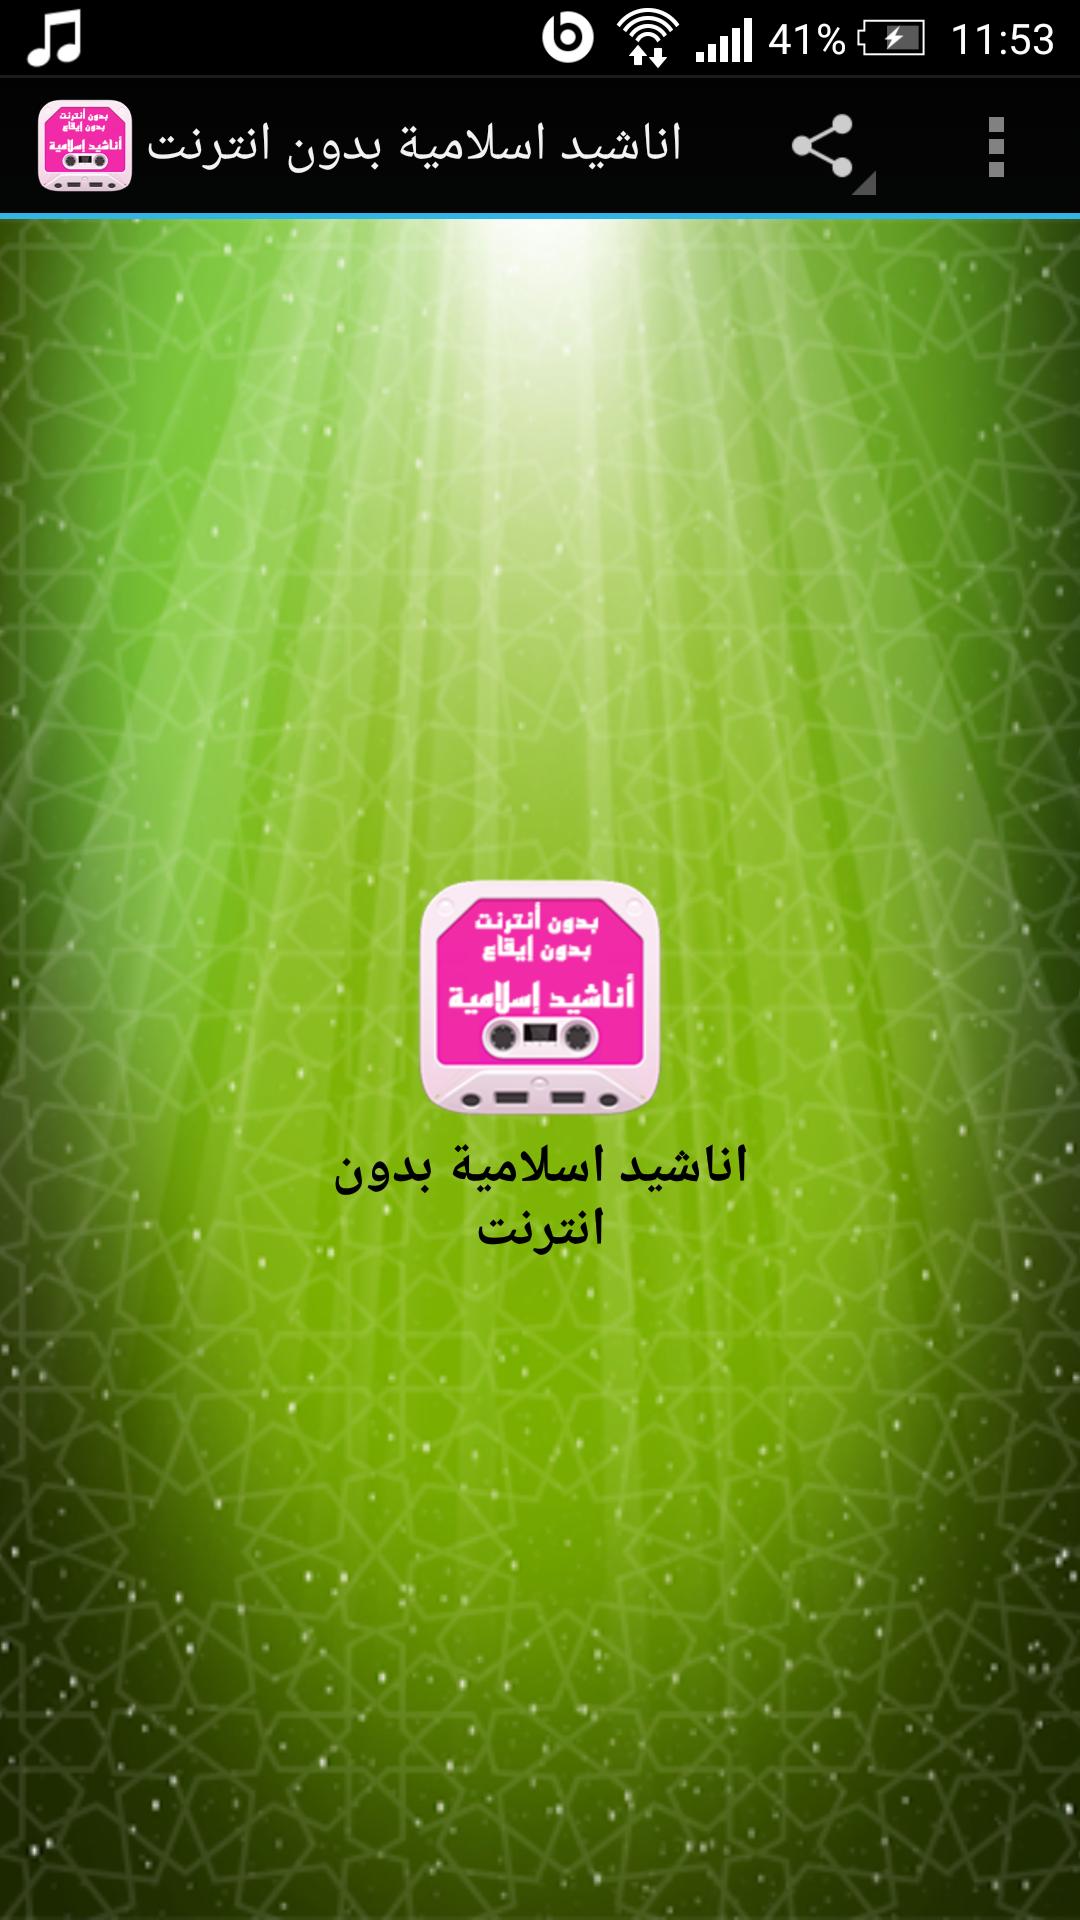 اناشيد اسلامية بدون انترنت For Android Apk Download